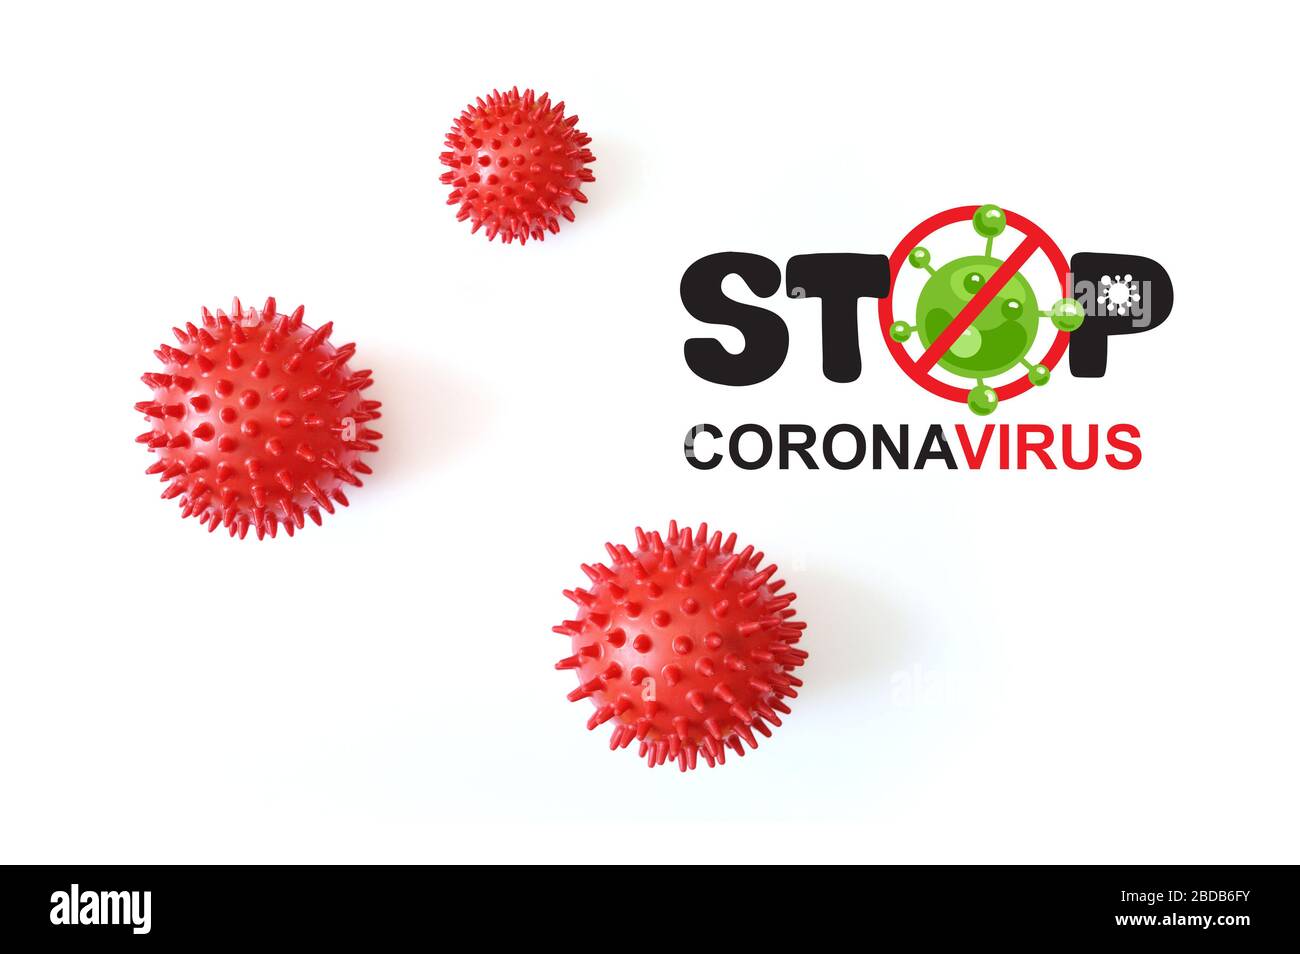 Modello astratto del ceppo virale della sindrome respiratoria Stop coronavirus e nuovo coronavirus covid-19 con testo su sfondo bianco. Pandemia virale Foto Stock